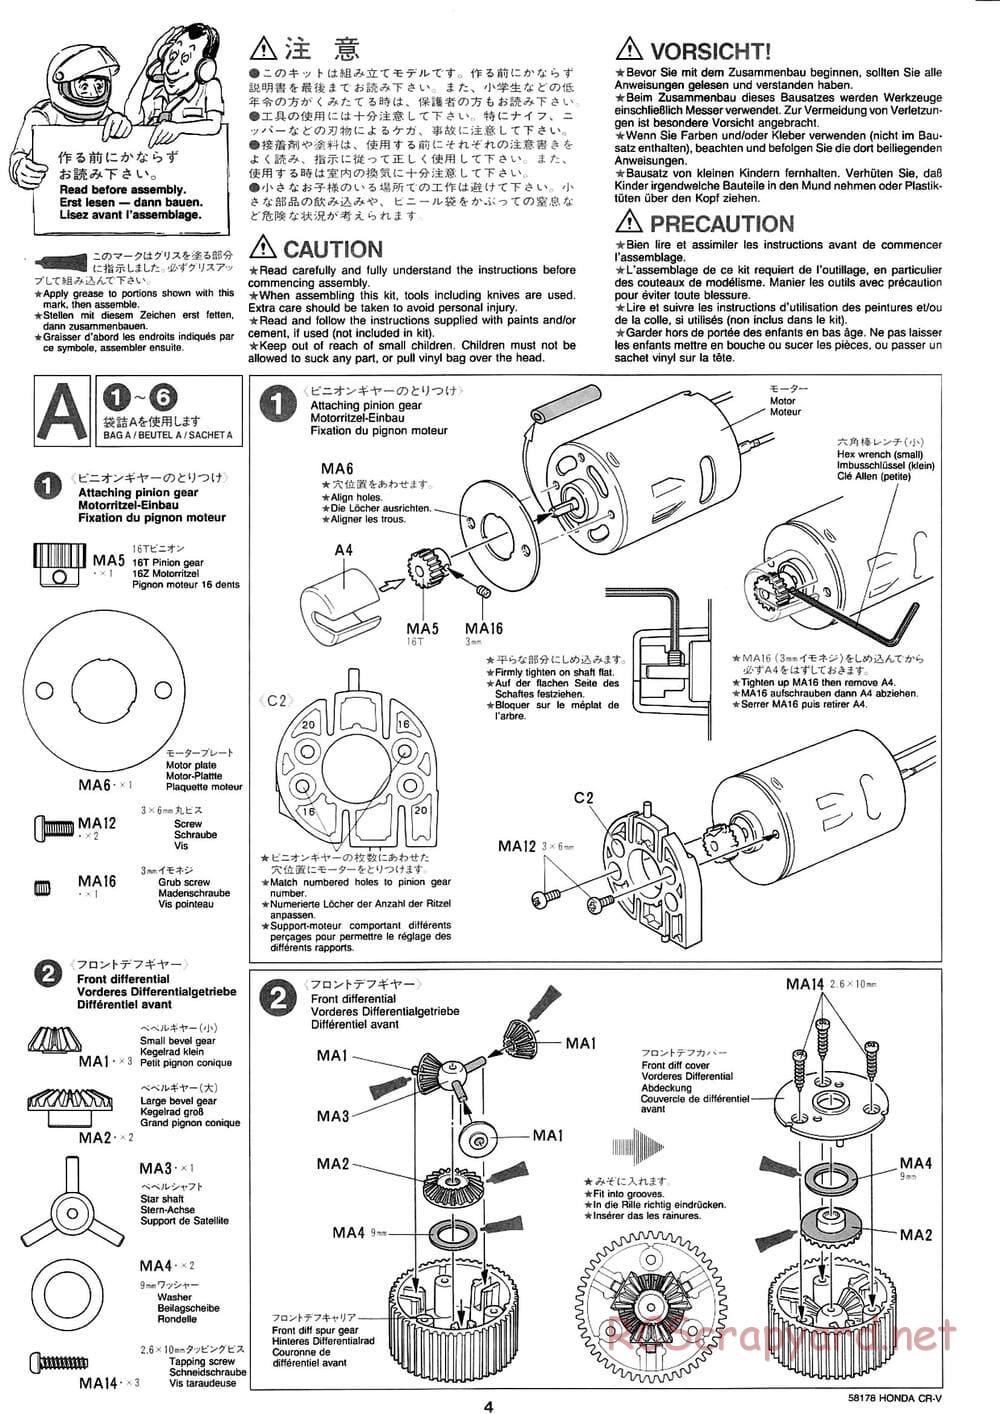 Tamiya - Honda CR-V - CC-01 Chassis - Manual - Page 4